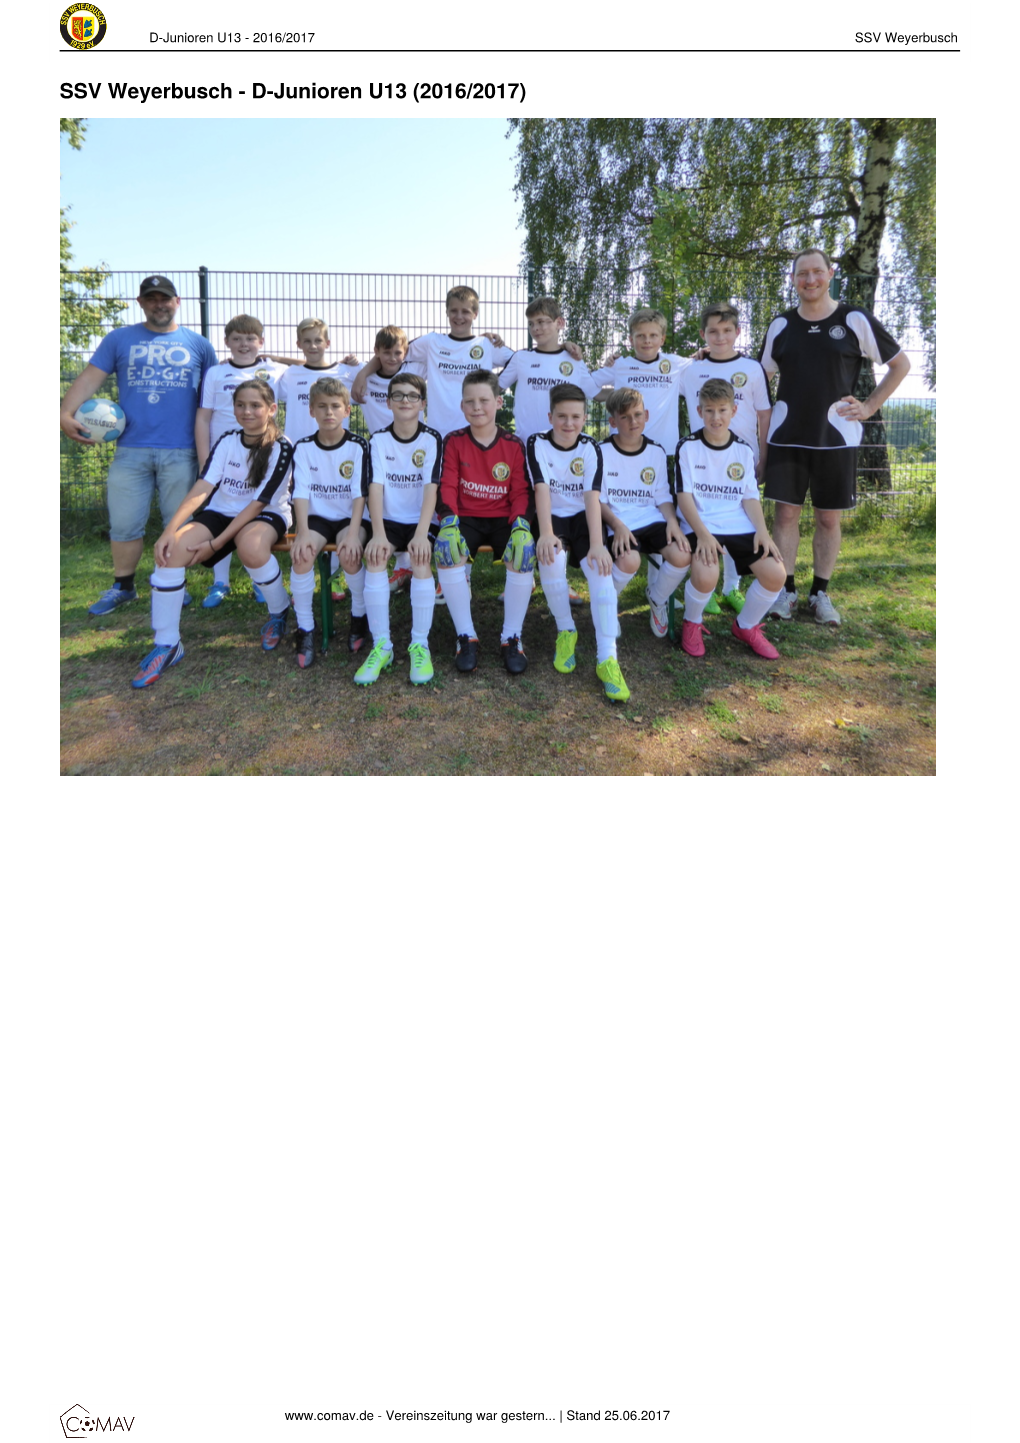 D-Junioren U13 - 2016/2017 SSV Weyerbusch